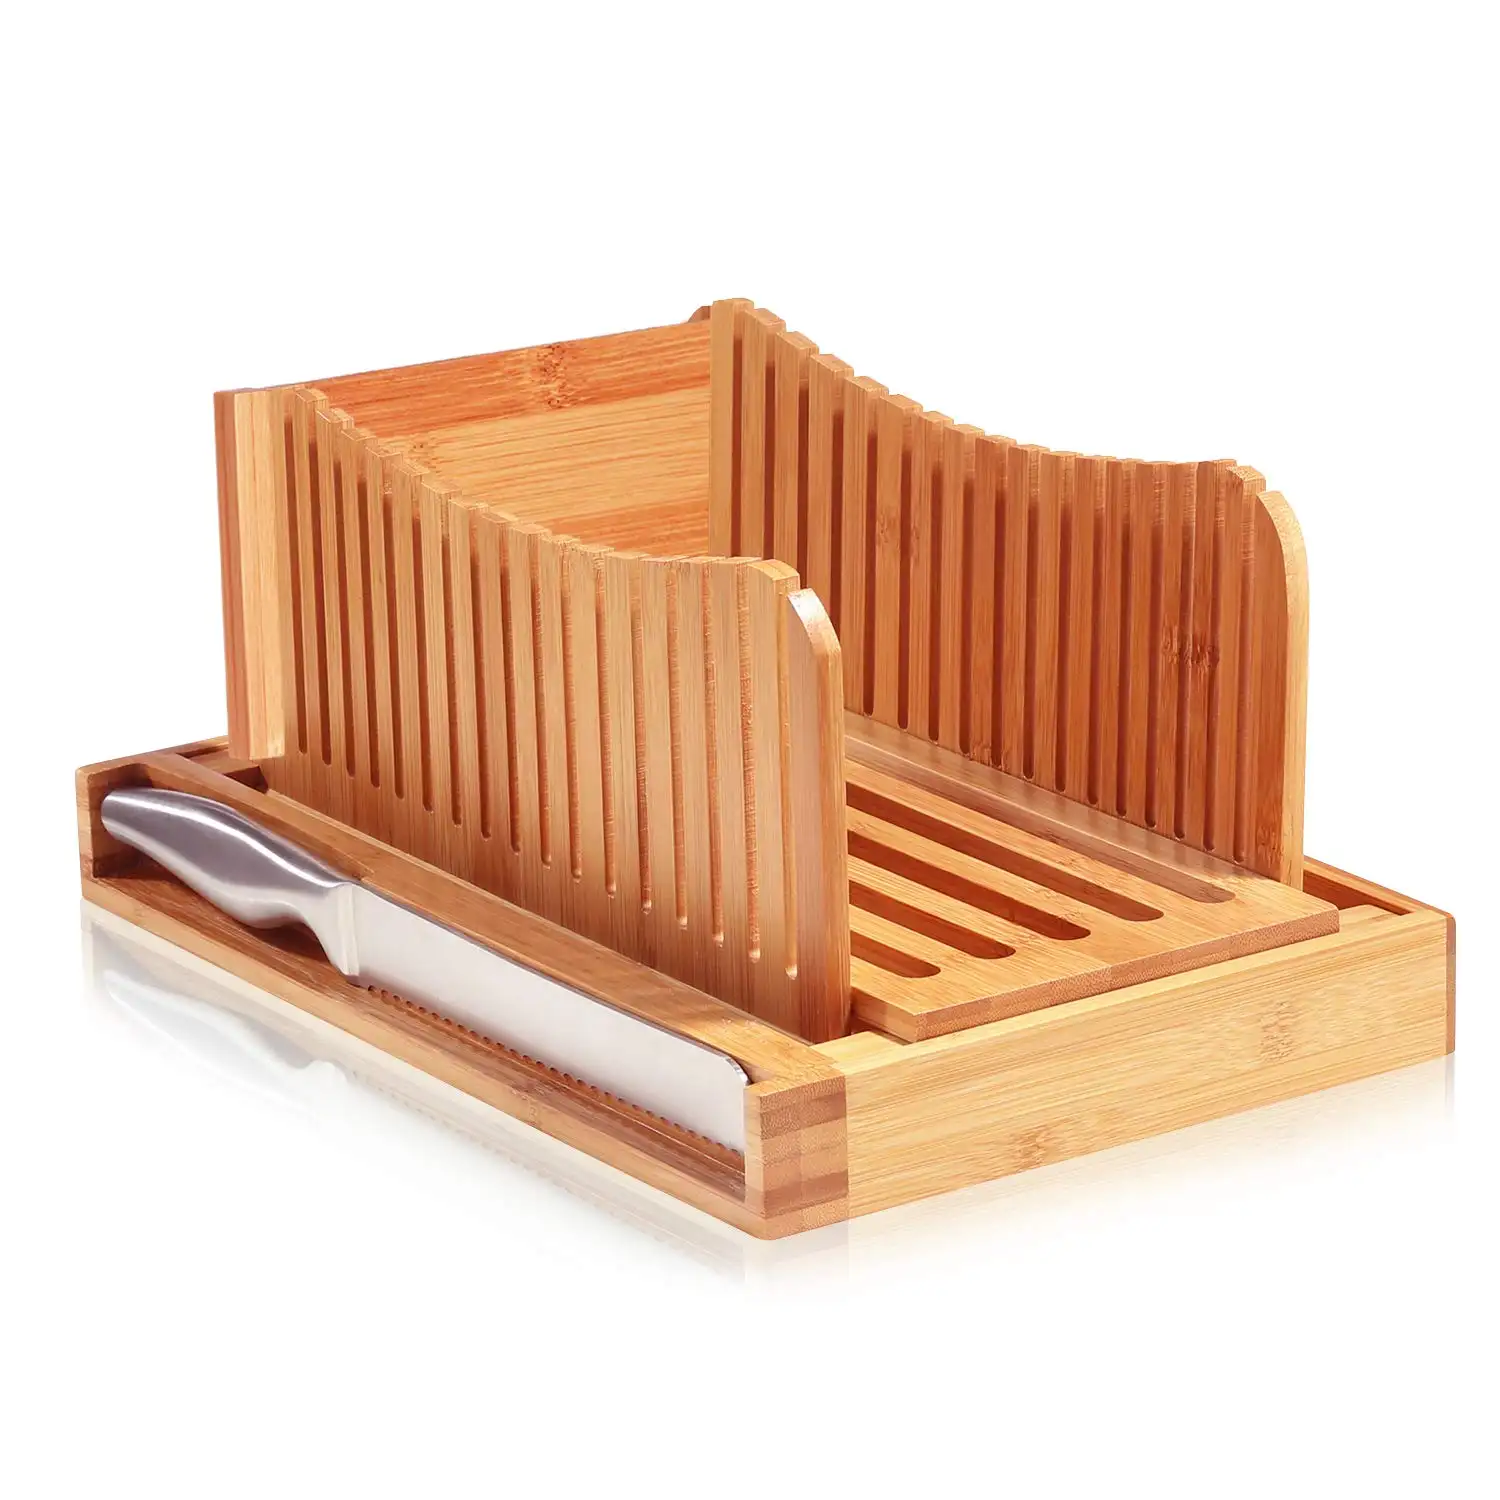 Paslanmaz ekmek tahtası  ve kırıntı tepsisi çelik bıçak takımı kesme ekmek dilimleyici ile özel bambu ahşap ekmek tahtası 